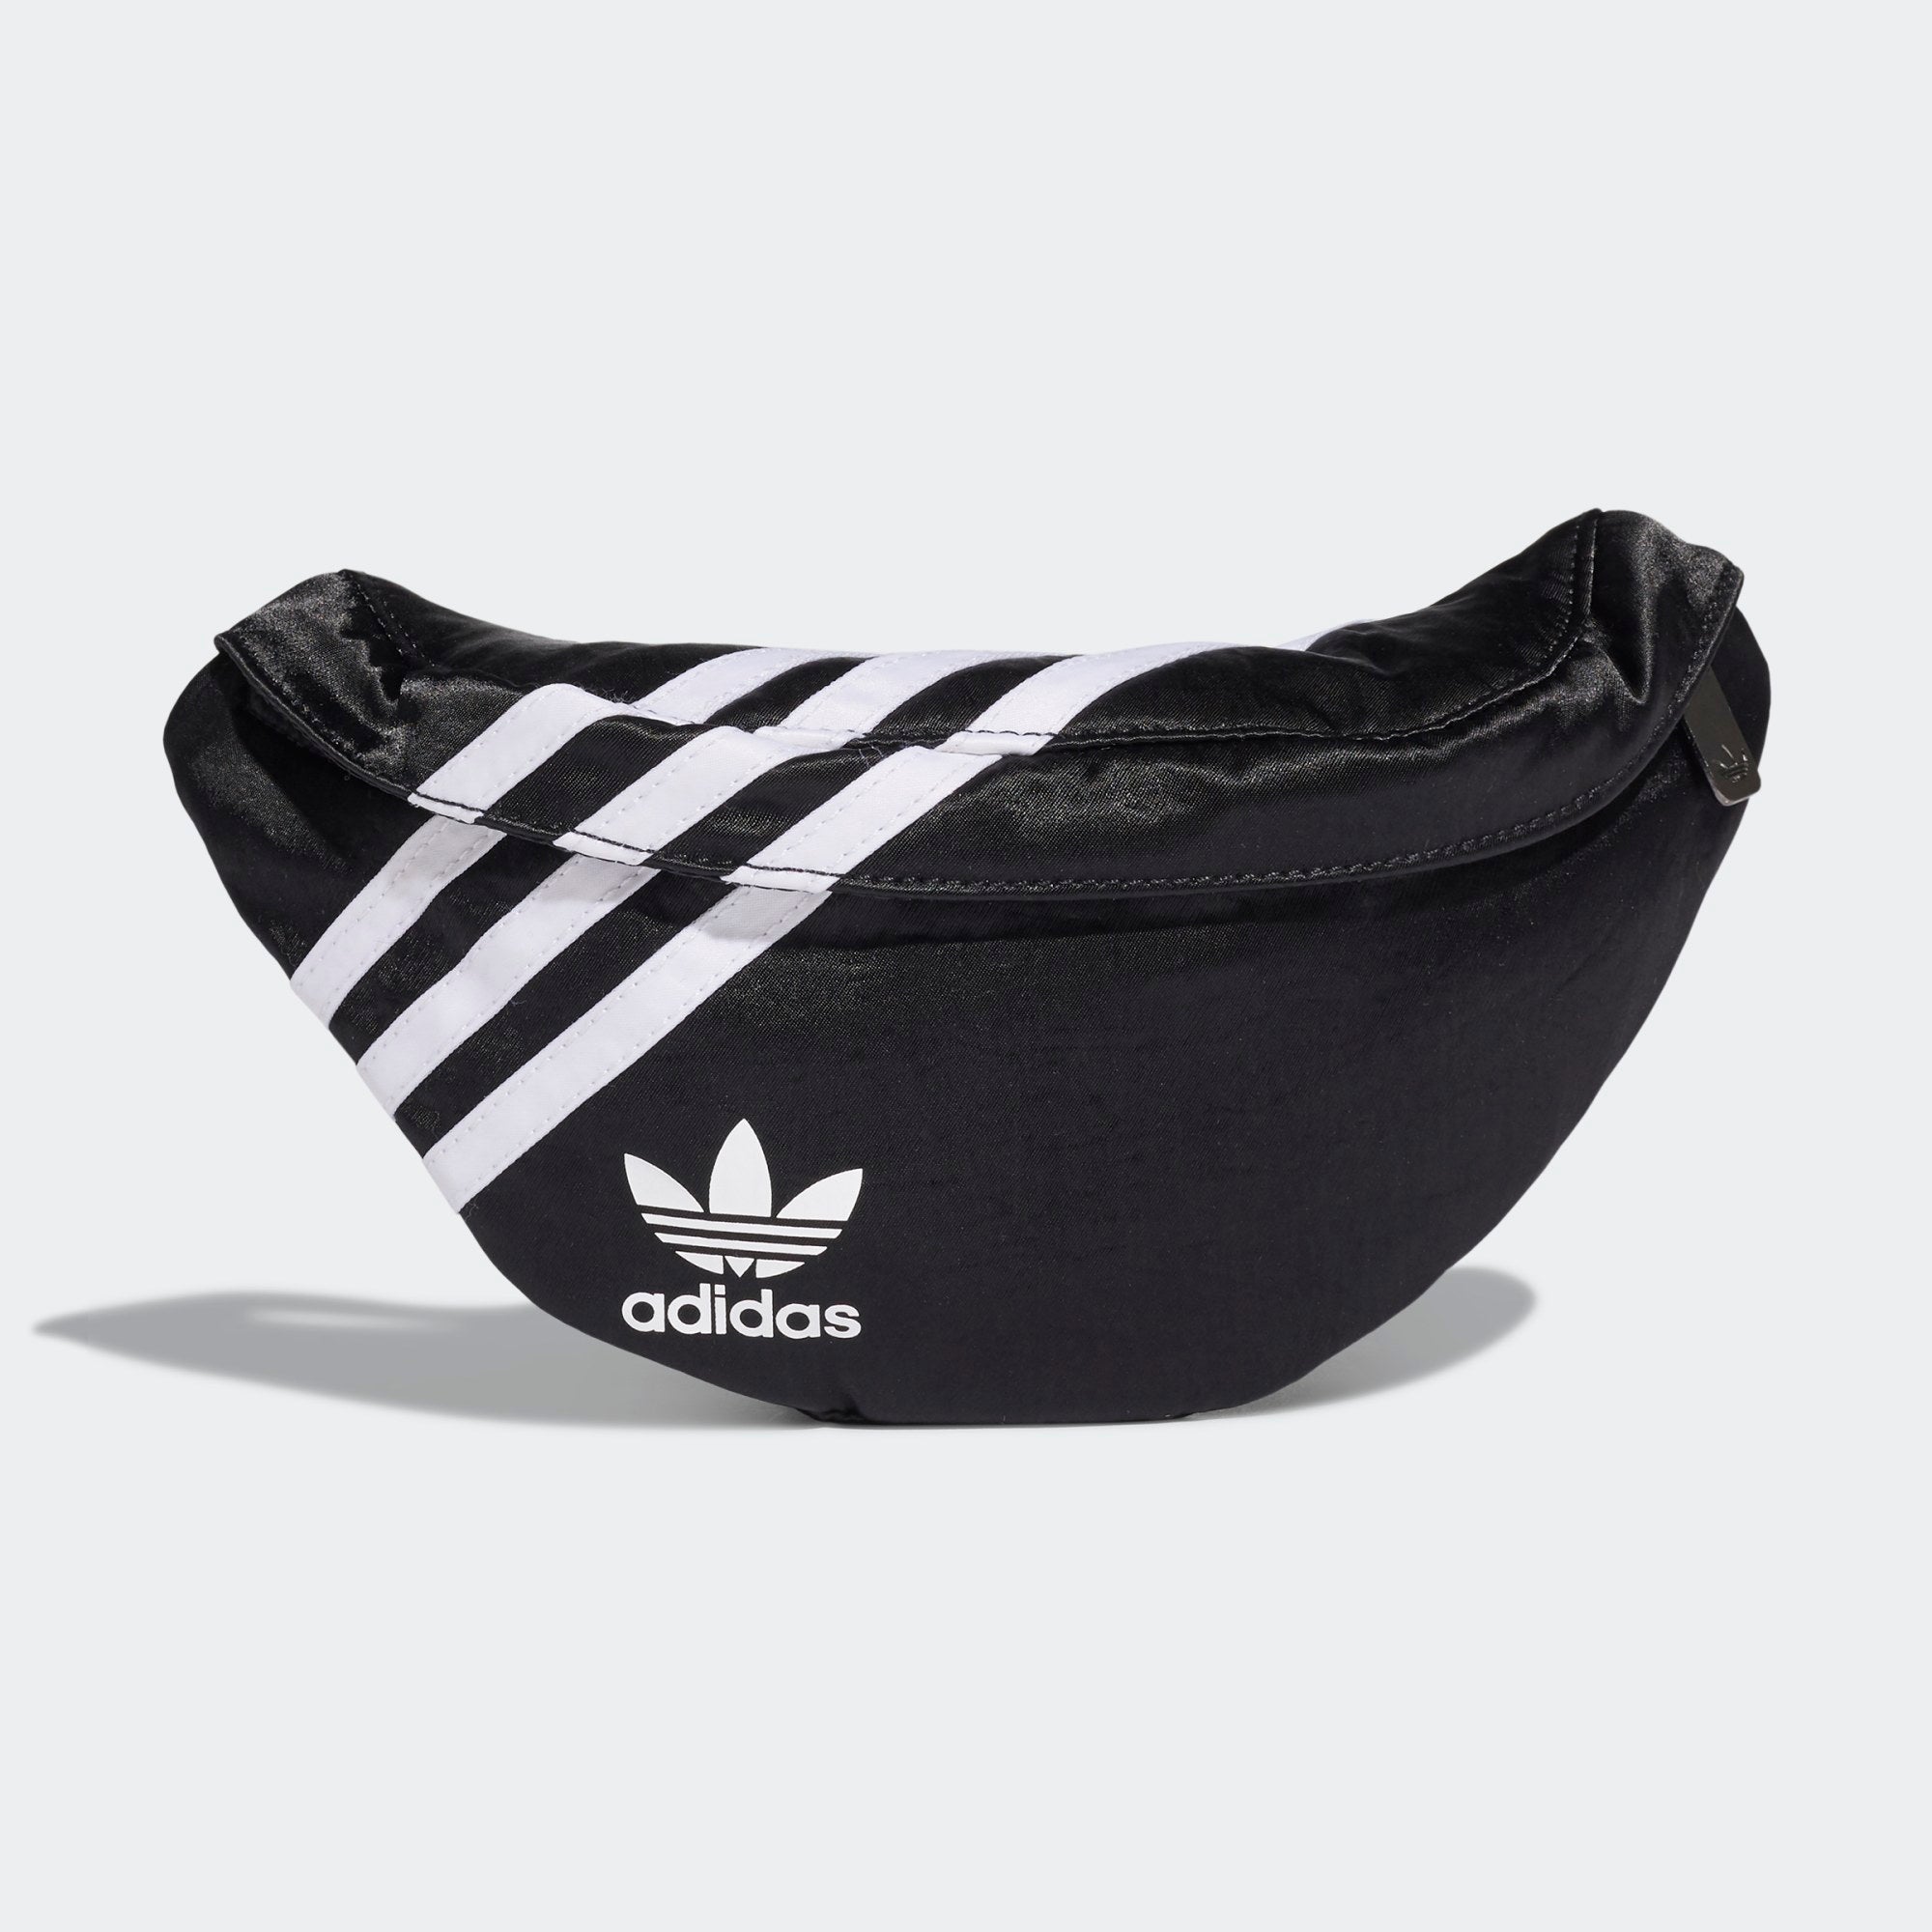 Adoración Ataque de nervios Biblia Adidas Originals "3 Stripe" Waist Bag (Black/White)(GD1649) – Trilogy Merch  PH